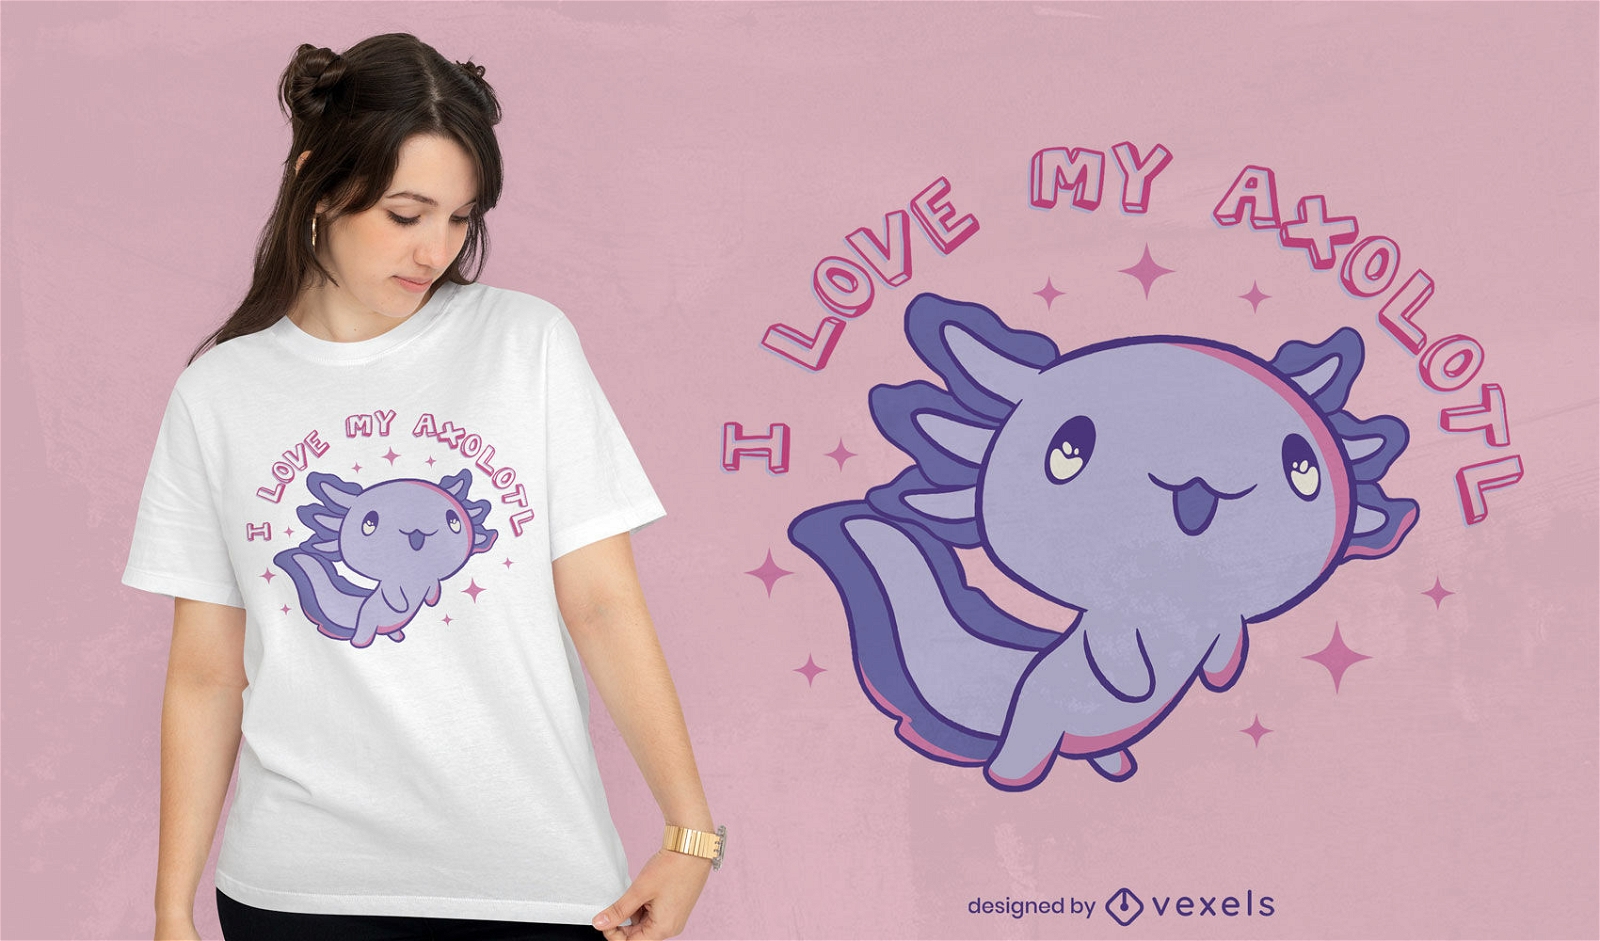 Cute axolotl animal t-shirt design